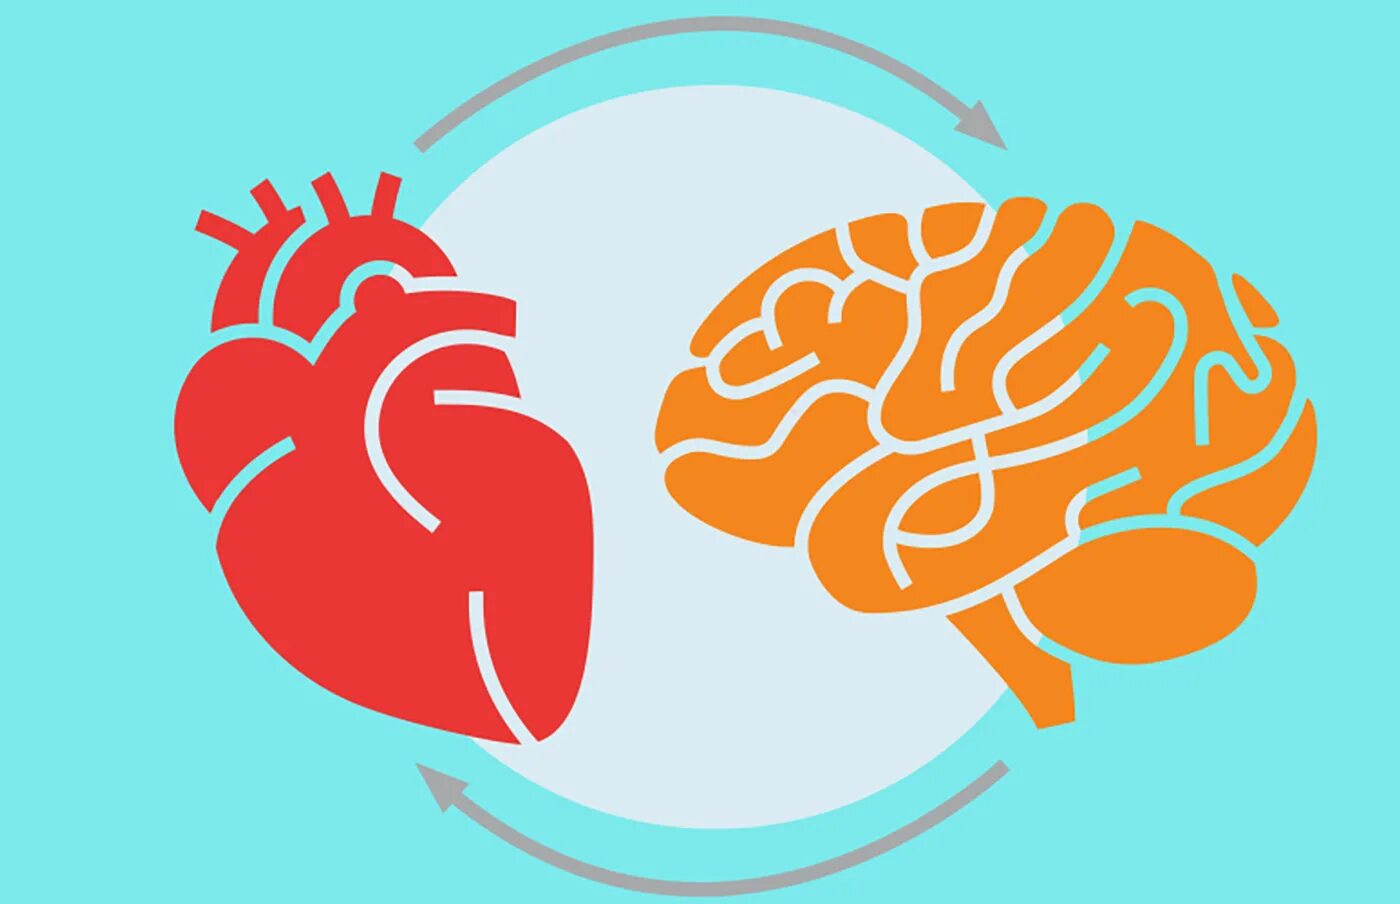 У сердца есть мозг. Мозг и сердце. Мозг и сердце логотип. Сердце и мозг взаимосвязь. Мозги и сердце.